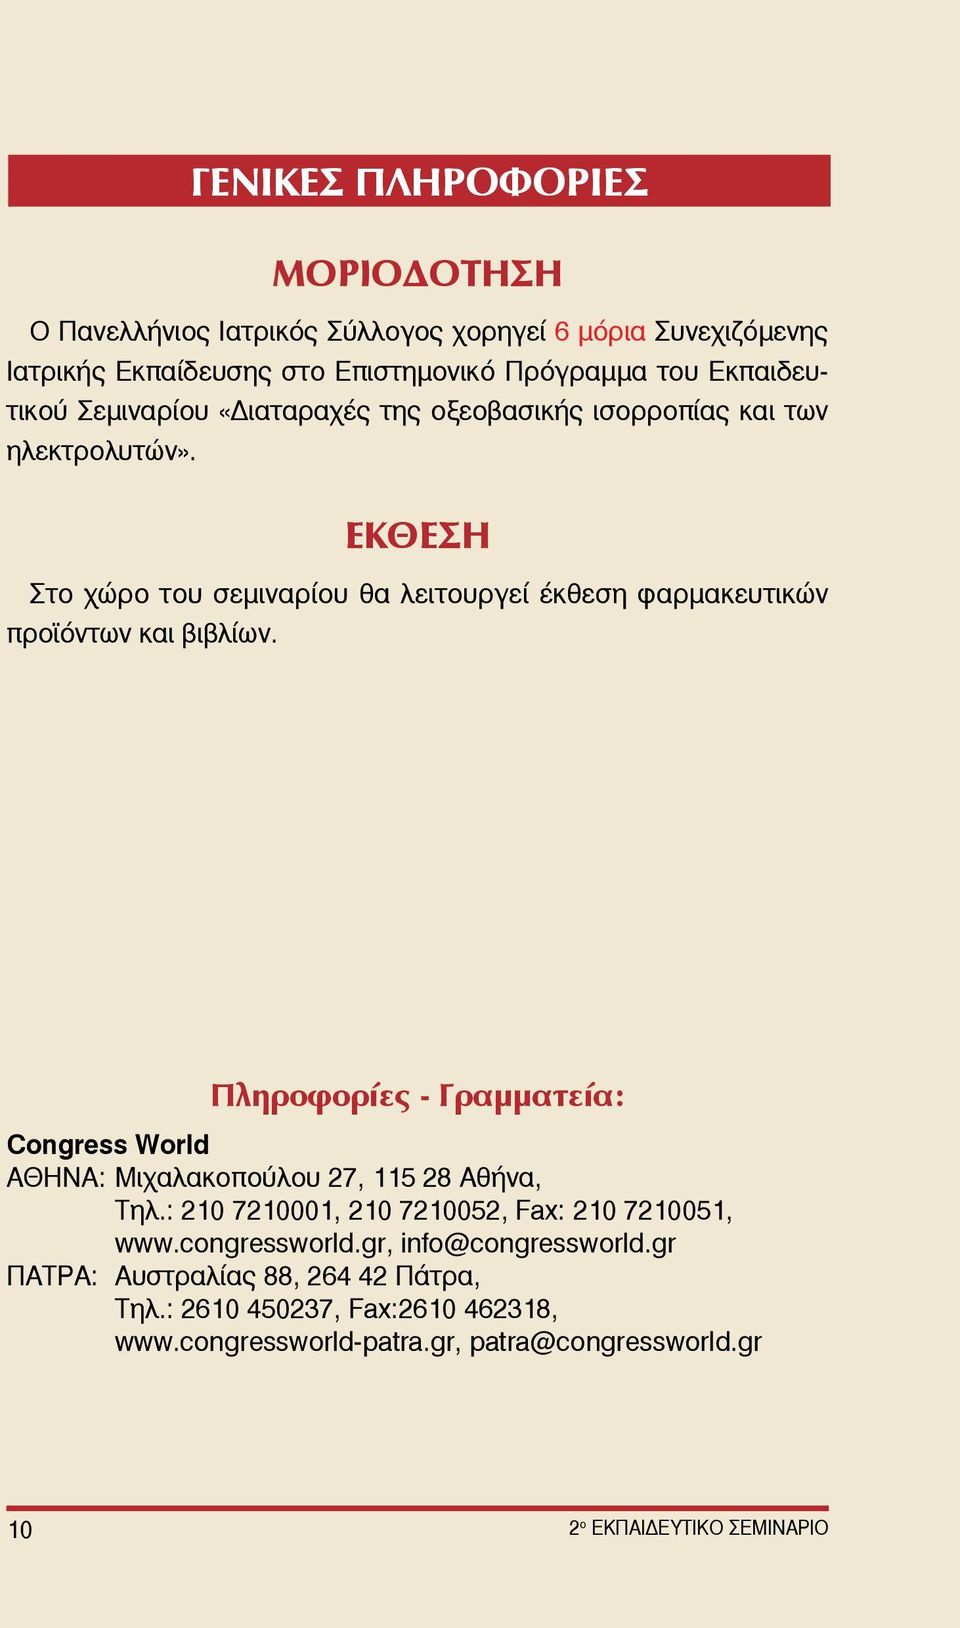 Πληροφορίες - Γραμματεία: Congress World AΘΗΝΑ: Μιχαλακοπούλου 27, 115 28 Αθήνα, Τηλ.: 210 7210001, 210 7210052, Fax: 210 7210051, www.congressworld.